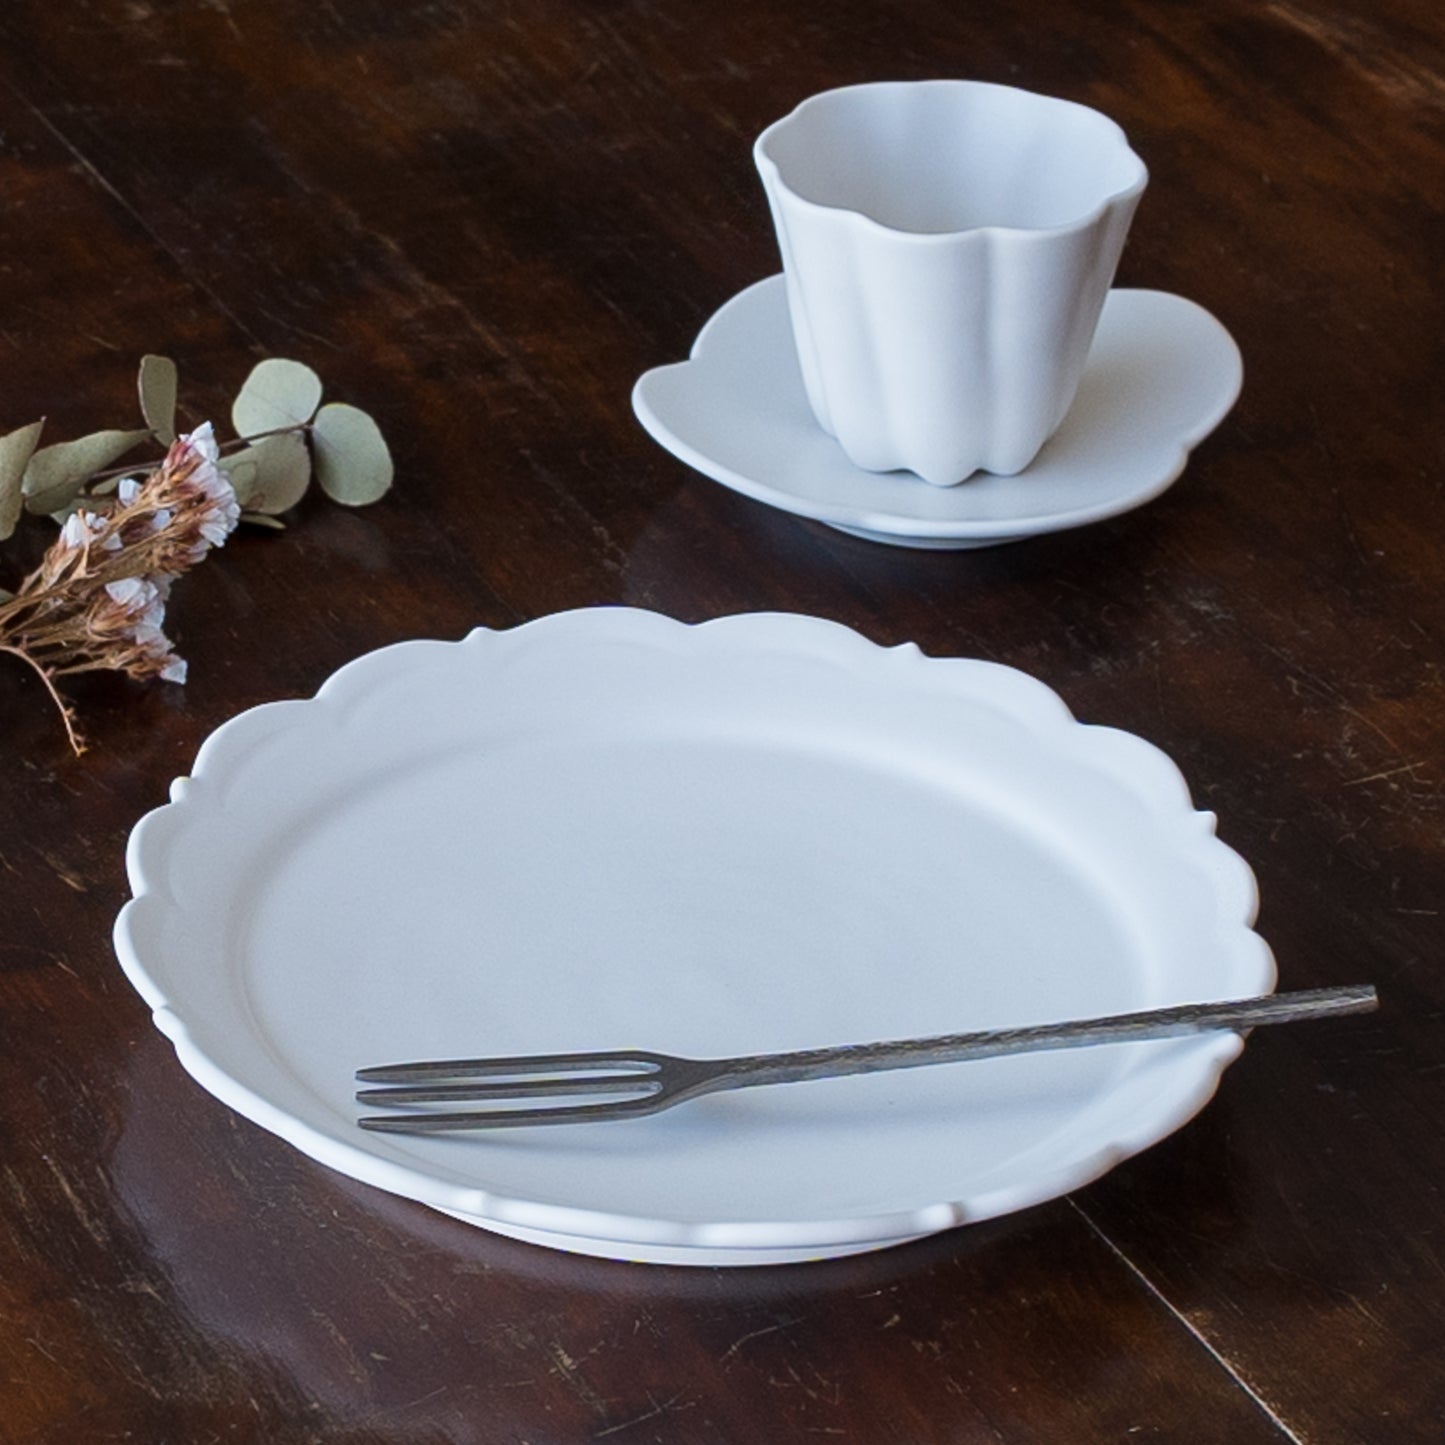 午後のティータイムが楽しみになる藤村佳澄さんの5寸レリーフ皿とカヌレ茶器